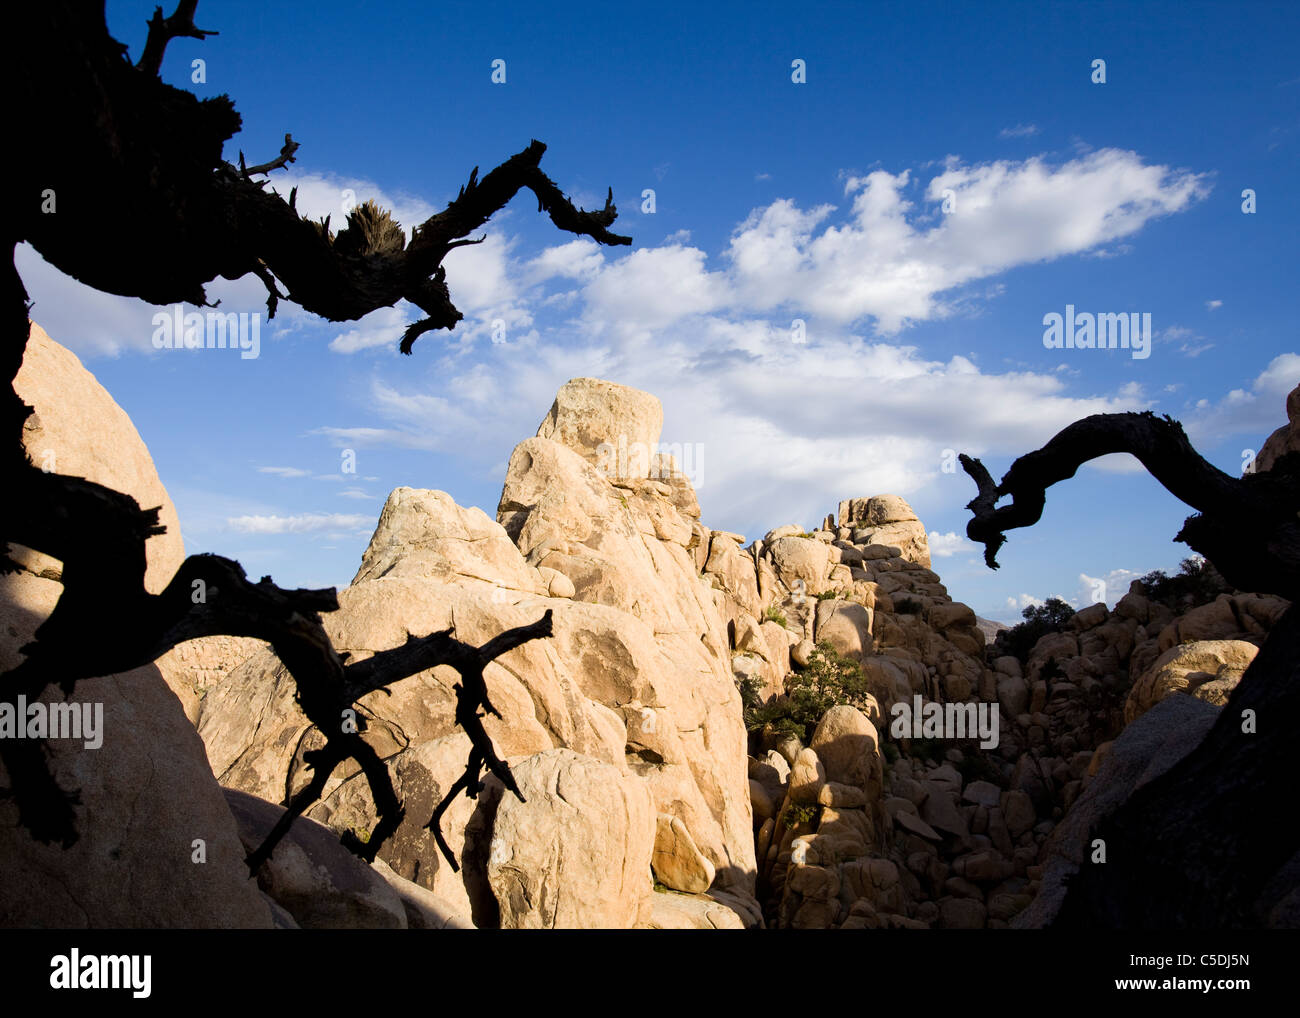 Un stranamente gneiss unica formazione di roccia nel sud-ovest americano nel deserto - Deserto Mojave, California USA Foto Stock